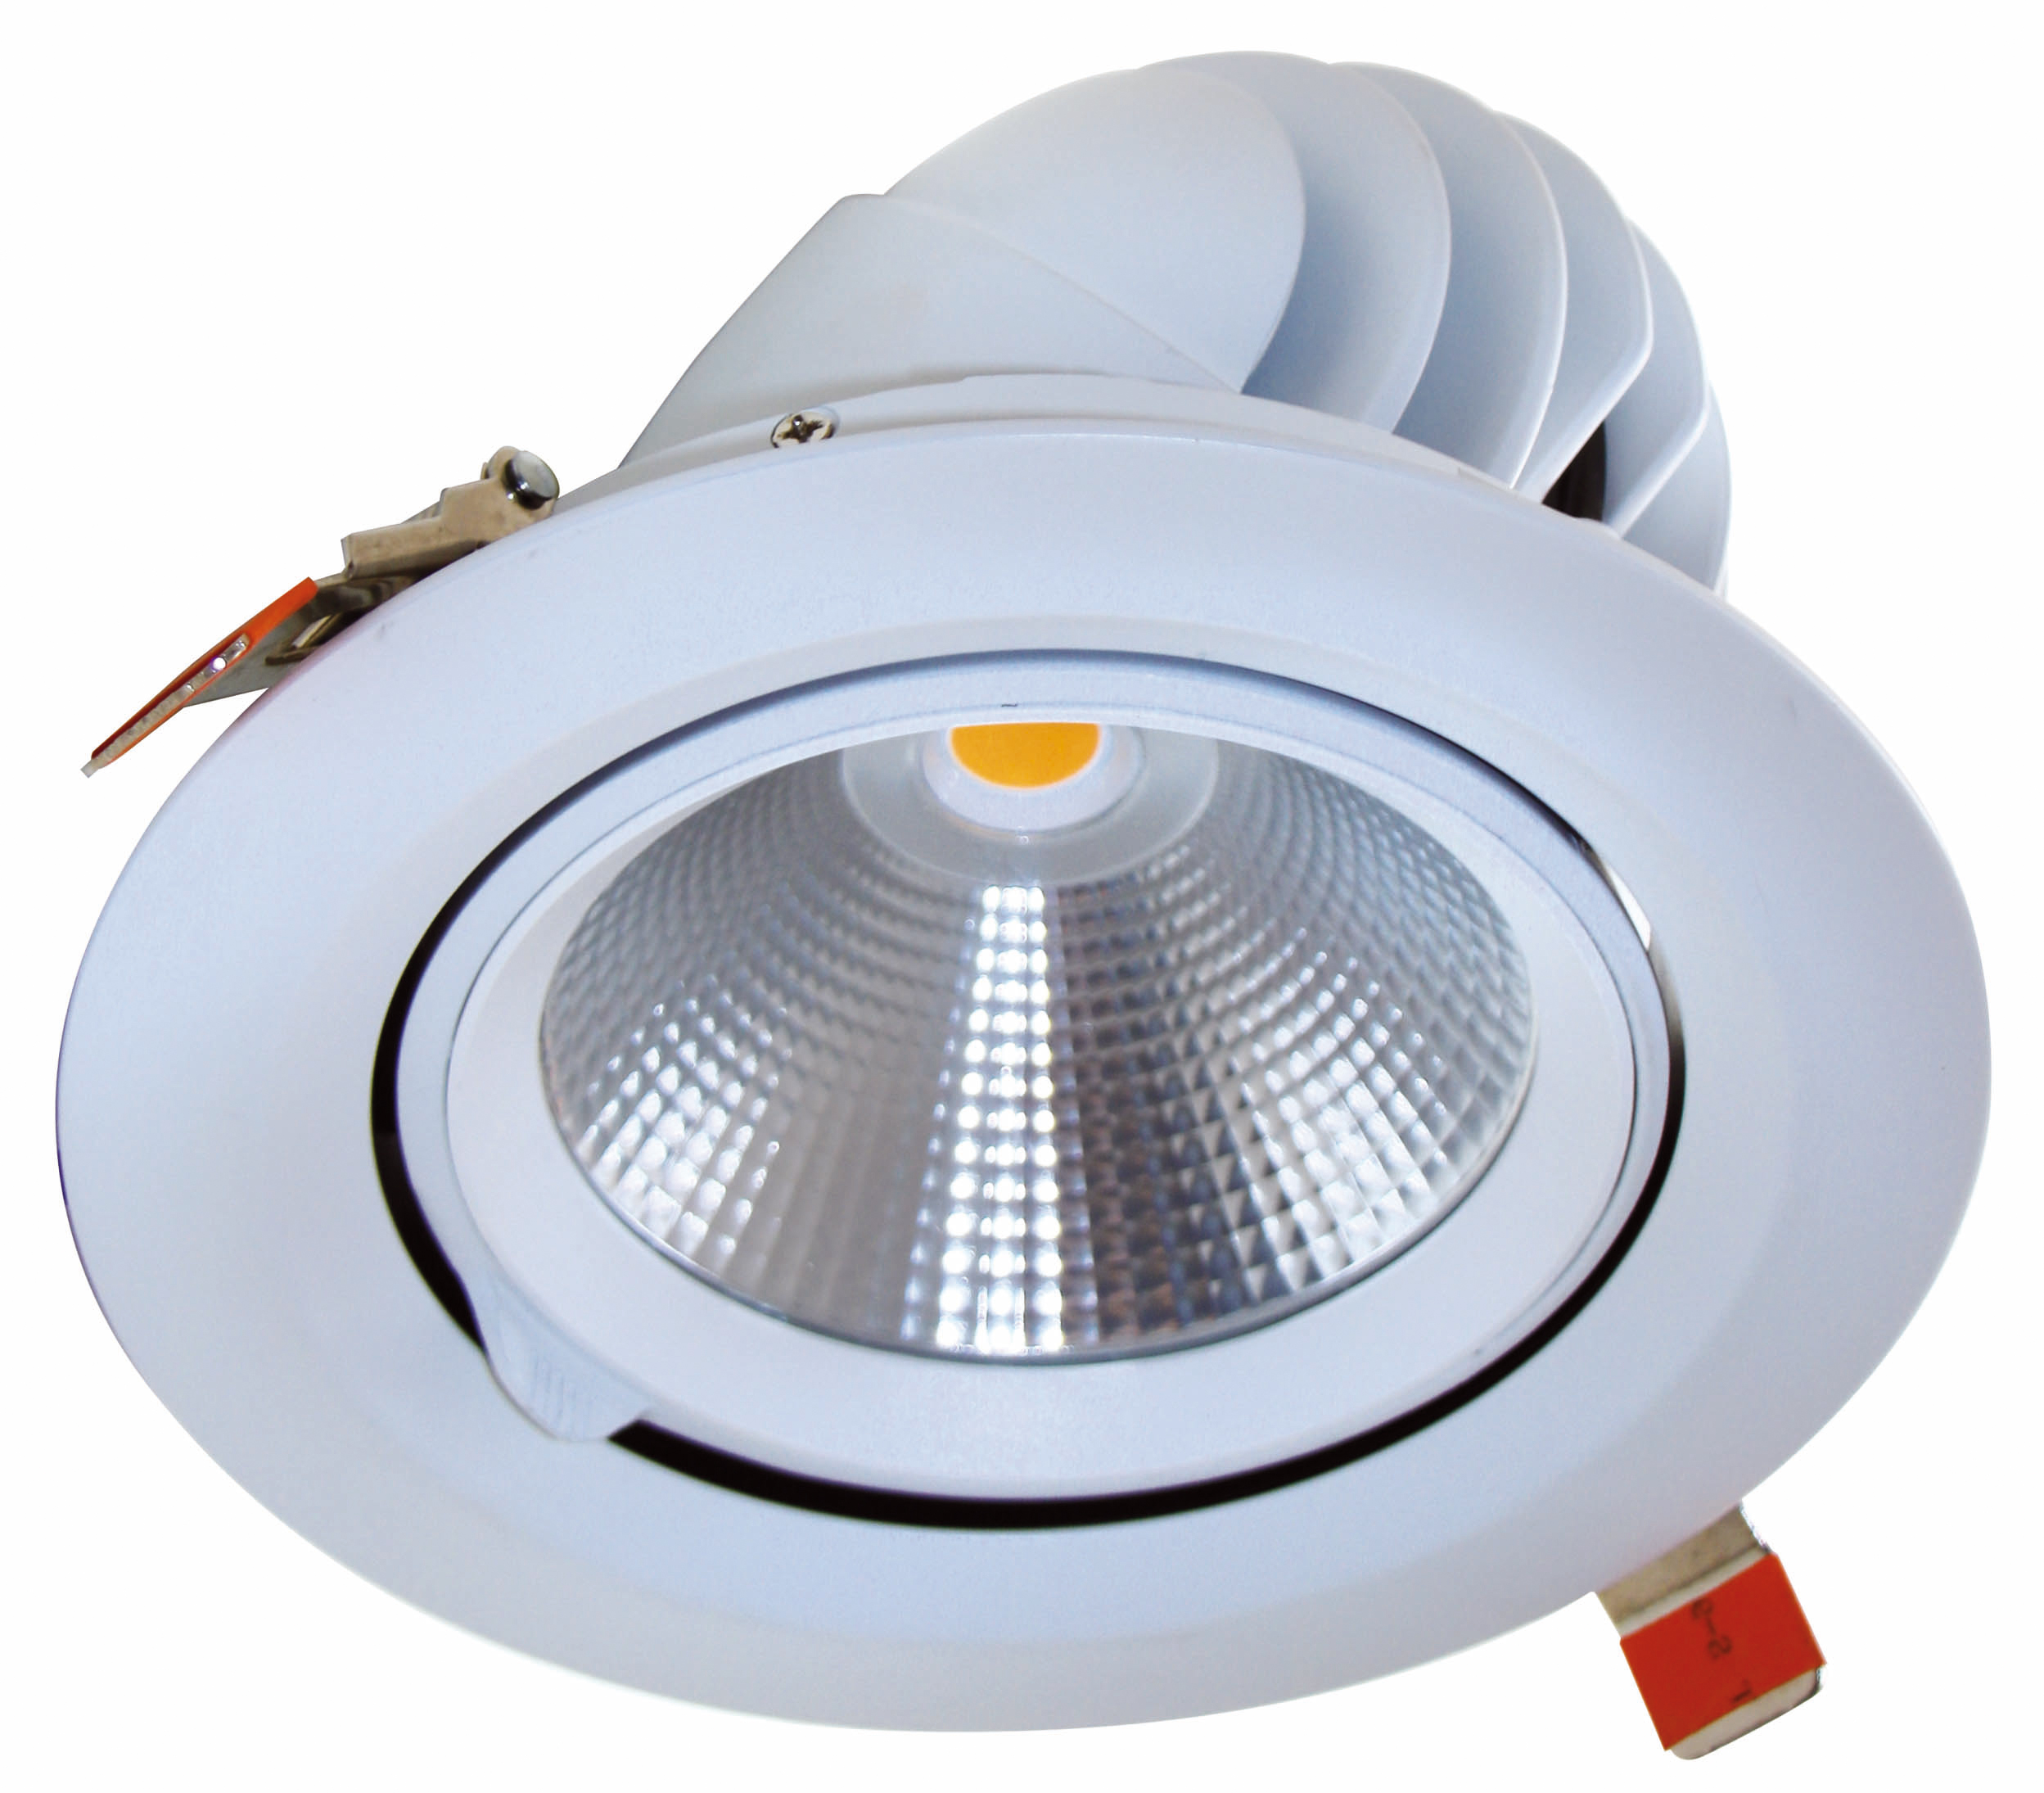 LED-Downlight Multispot, 20 W, weiß, warmweiß, 930, 1.600 lm, 24°, 3.000 K